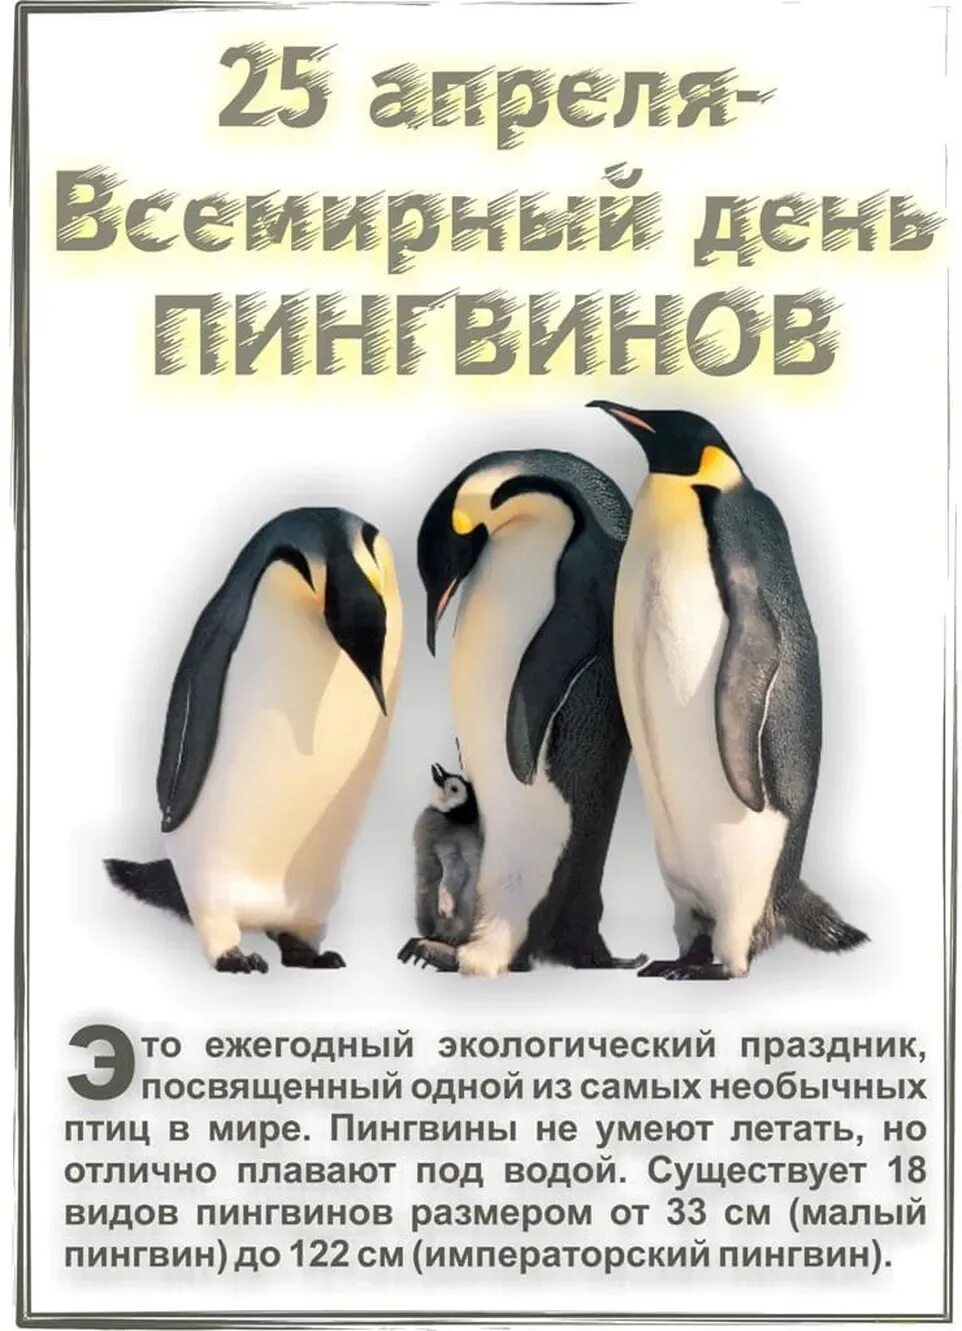 Три пингвина завтра. Всемирный день пингвинов 25 апреля. Всемныйдень пингвинов. Всемирныйсдень пингвинов. Открытка с днем пингвина.